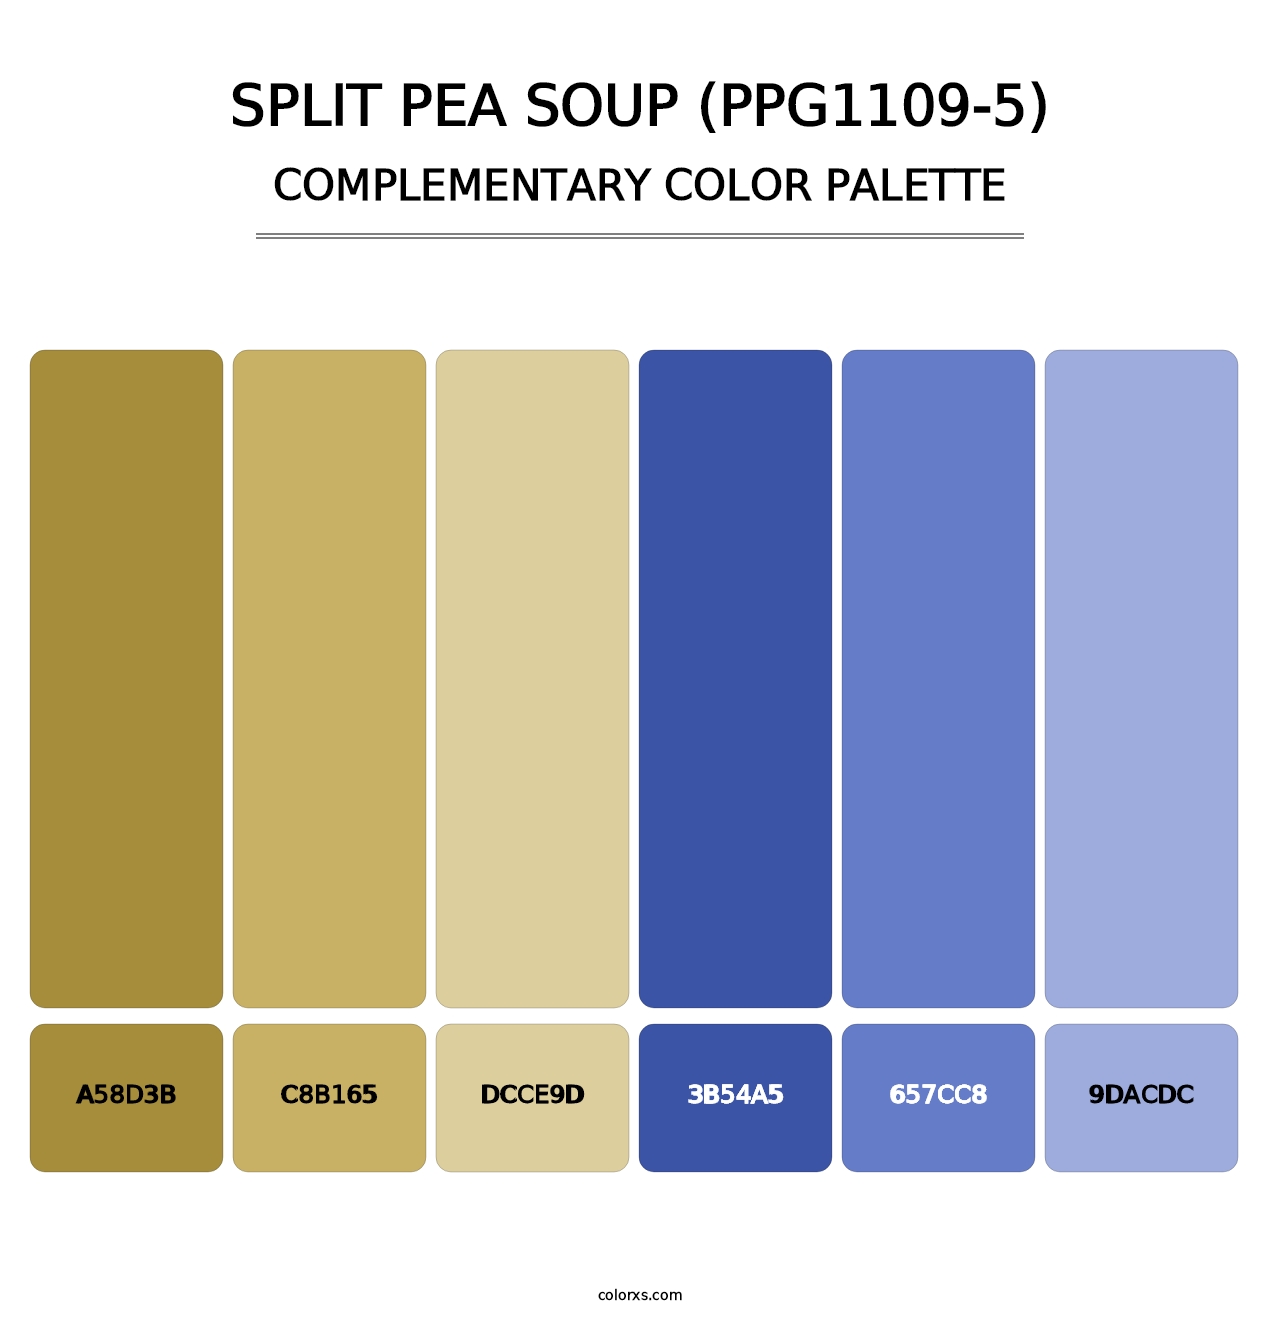 Split Pea Soup (PPG1109-5) - Complementary Color Palette